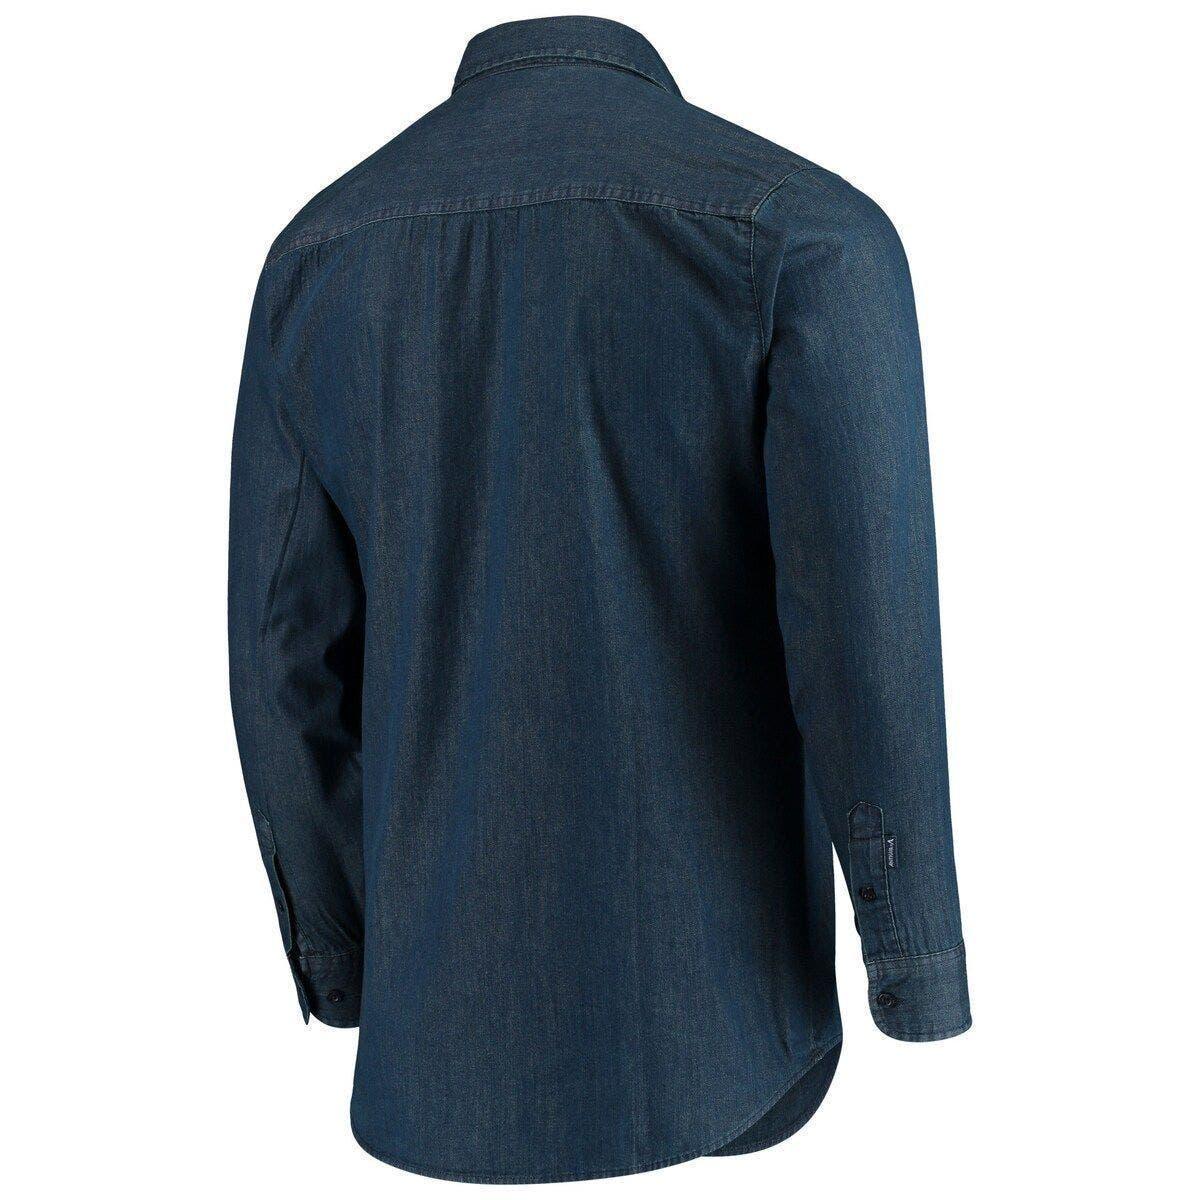 Women's Antigua Navy/Gray Dallas Cowboys Ease Flannel Button-Up